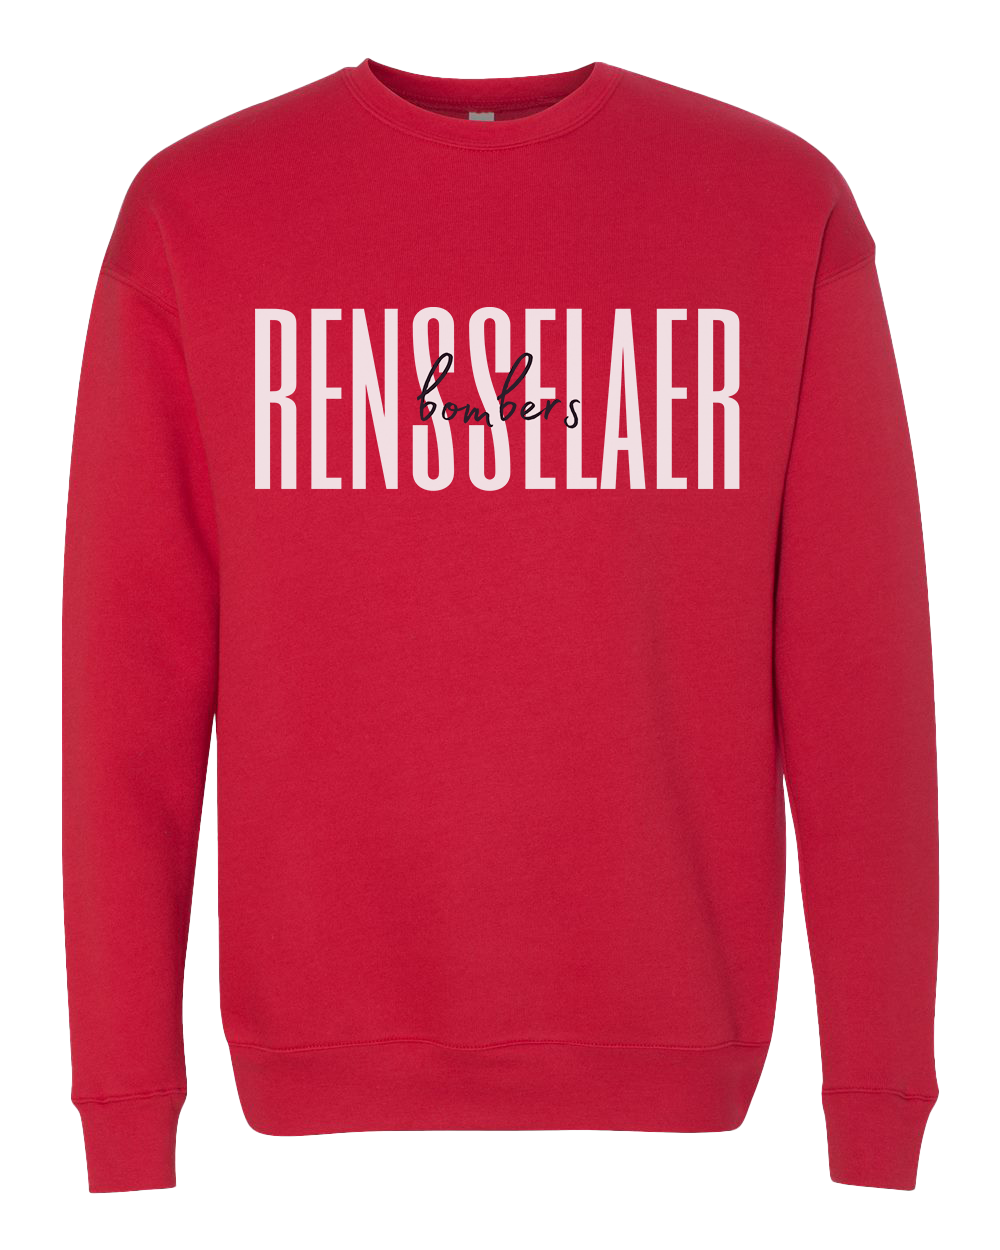 Rensselaer Bombers Script Crew Sweatshirt - Red